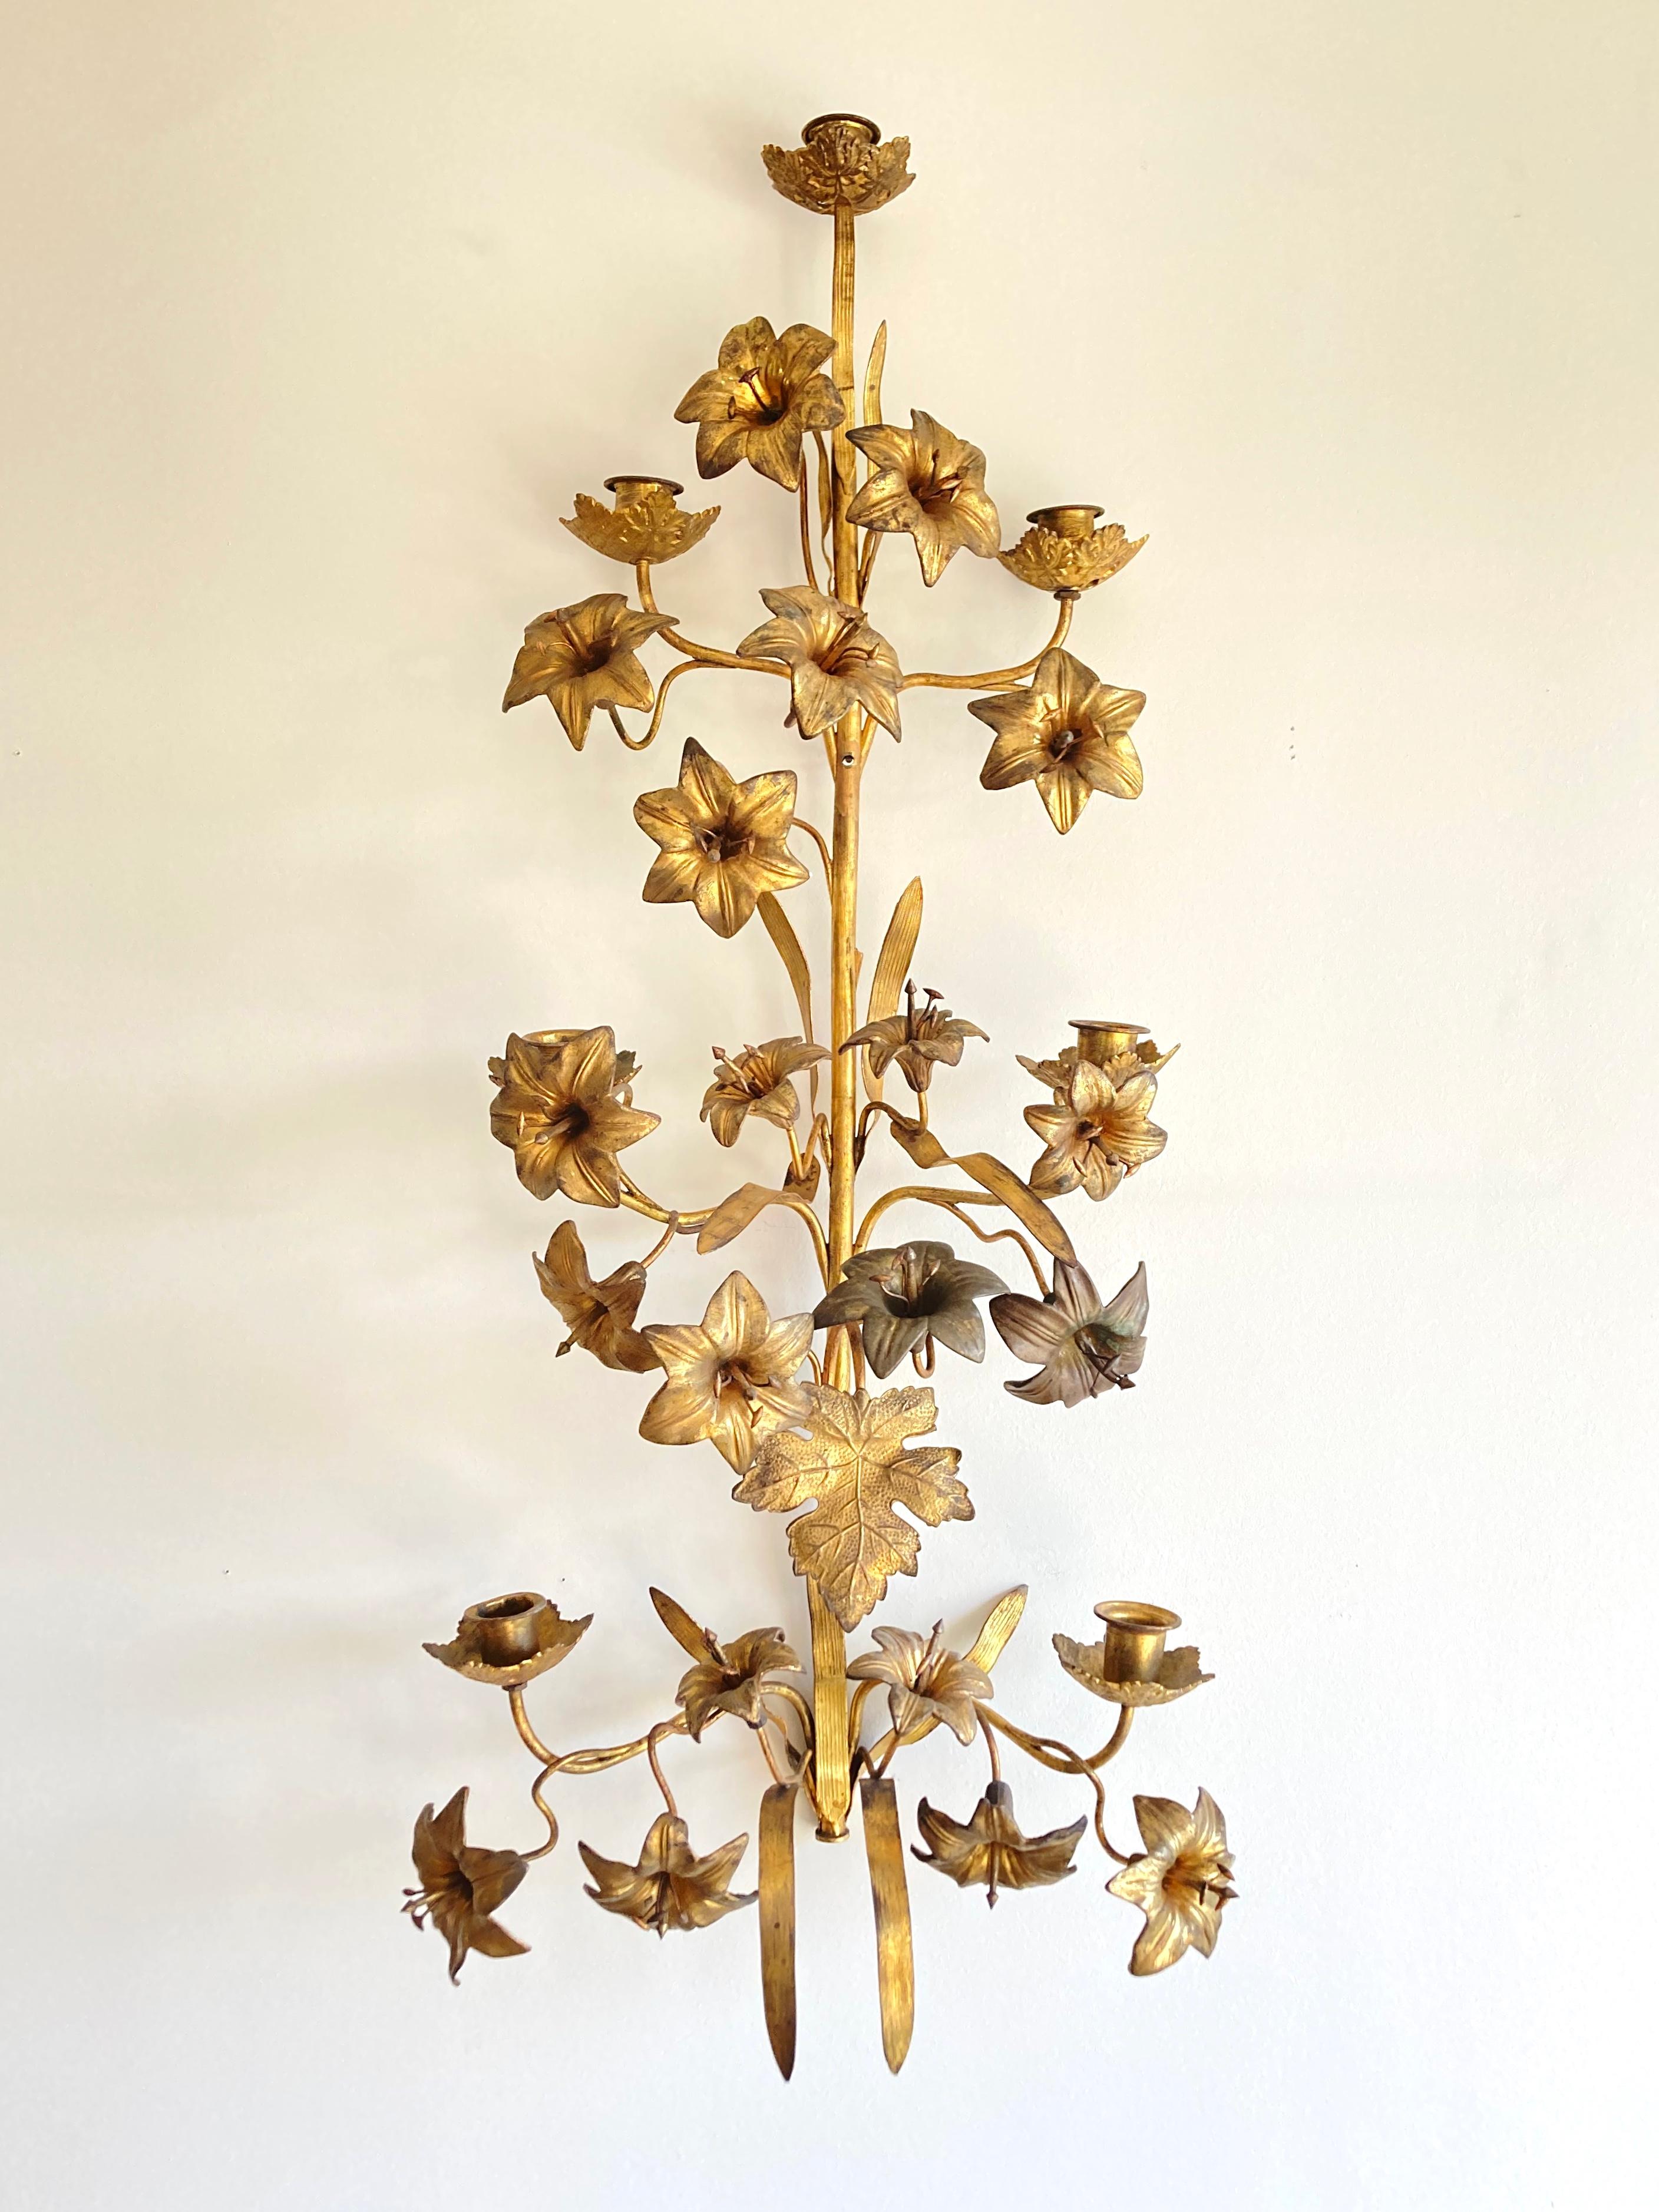 Ein sehr dekorativer, authentischer französischer Wandleuchter der Kirche Napoleon III, auch Ernteleuchter genannt. Dies ist ein ungewöhnliches, großes Wandleuchter-Modell für 7 Kerzen. Sie ist aus Messing und vergoldetem Metall gefertigt und stammt